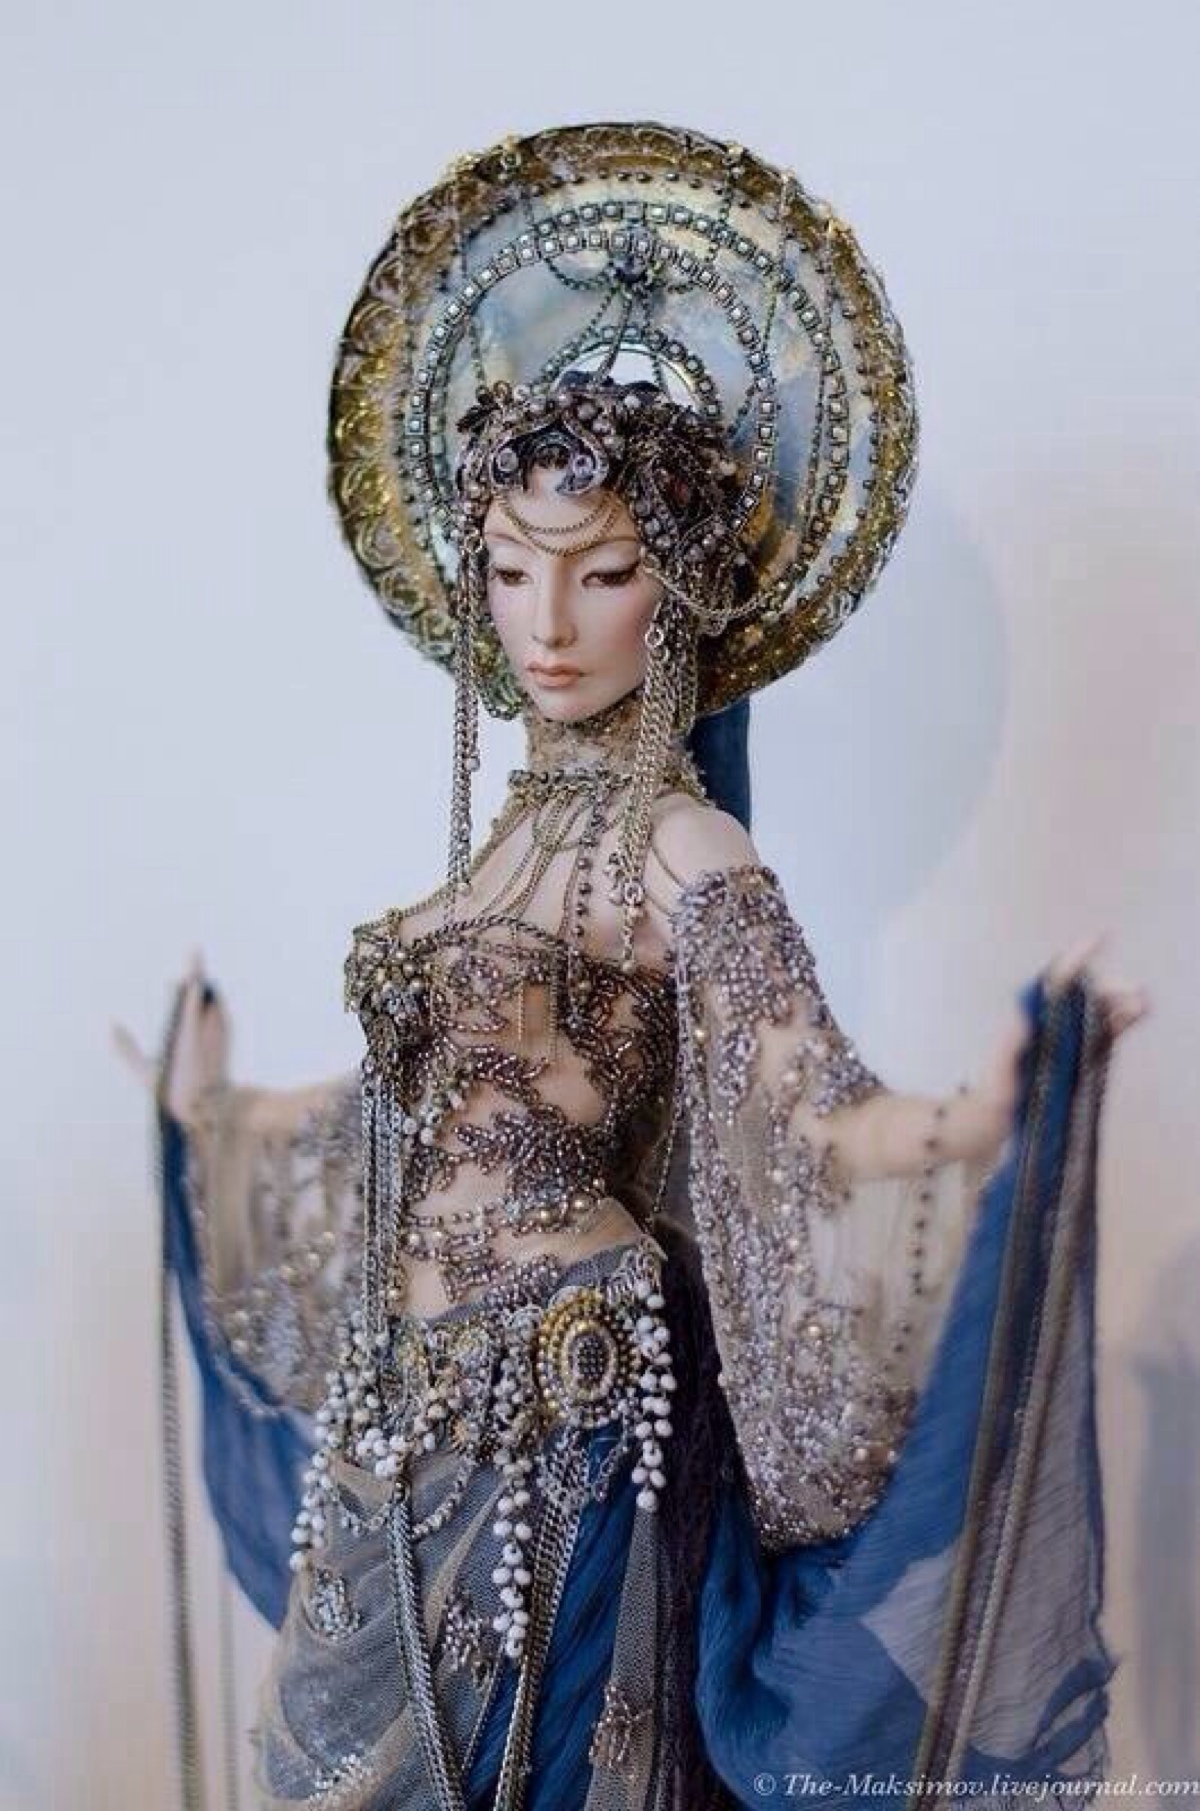 细腻的瓷娃娃,服饰非常华丽精致作者:sasha khudyakova